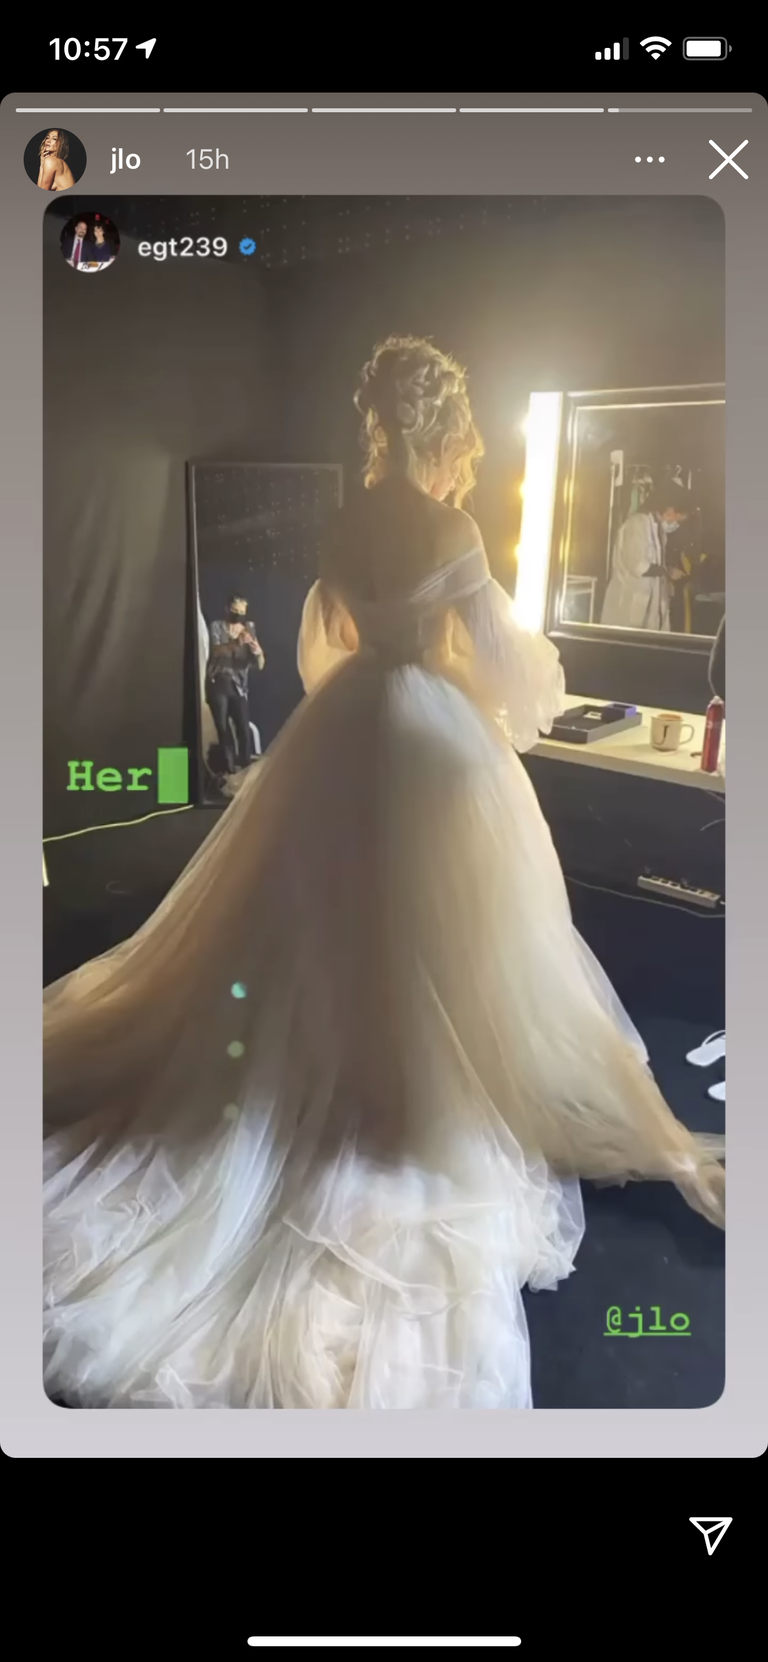 jennifer lopez's back in a wedding dress